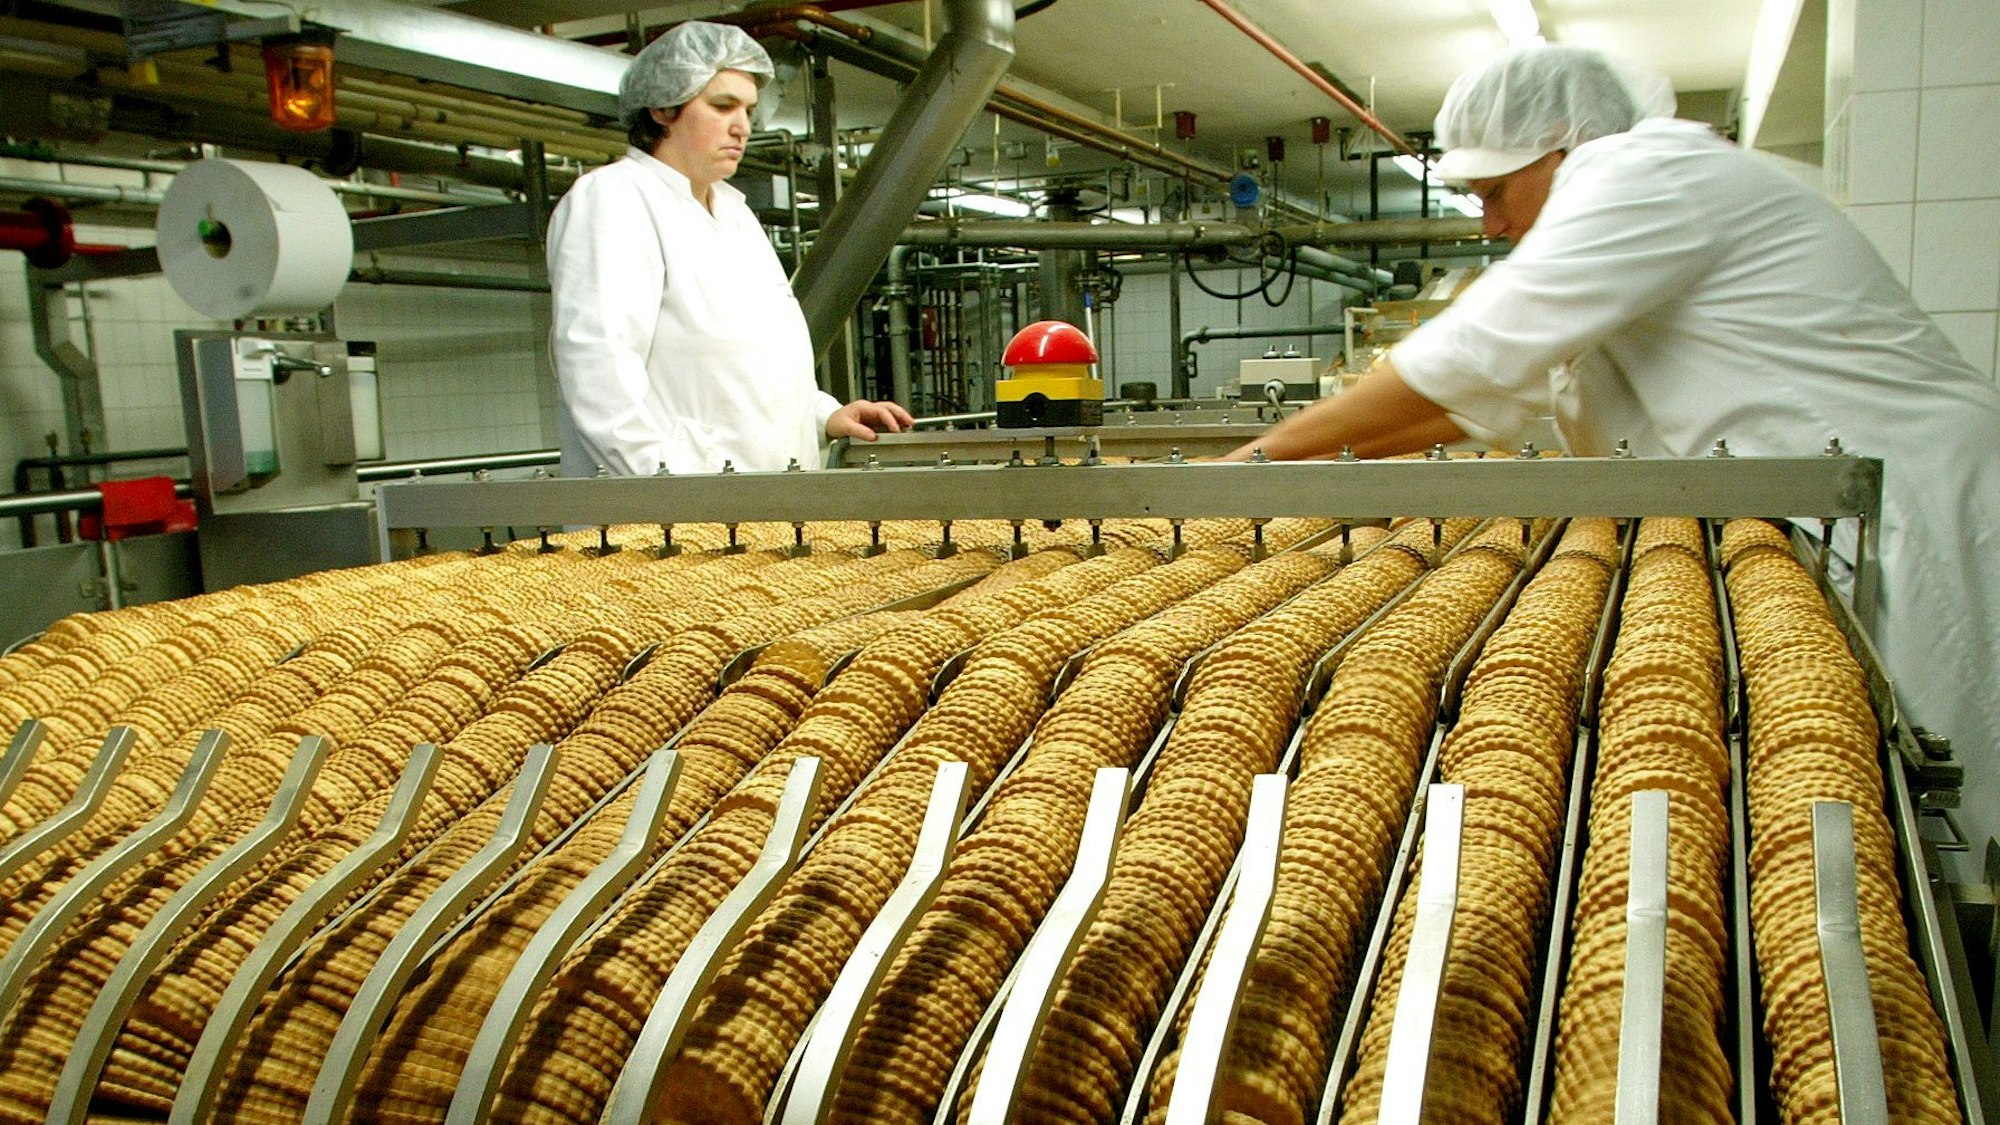 Keks-Reihen in einer Fabrik